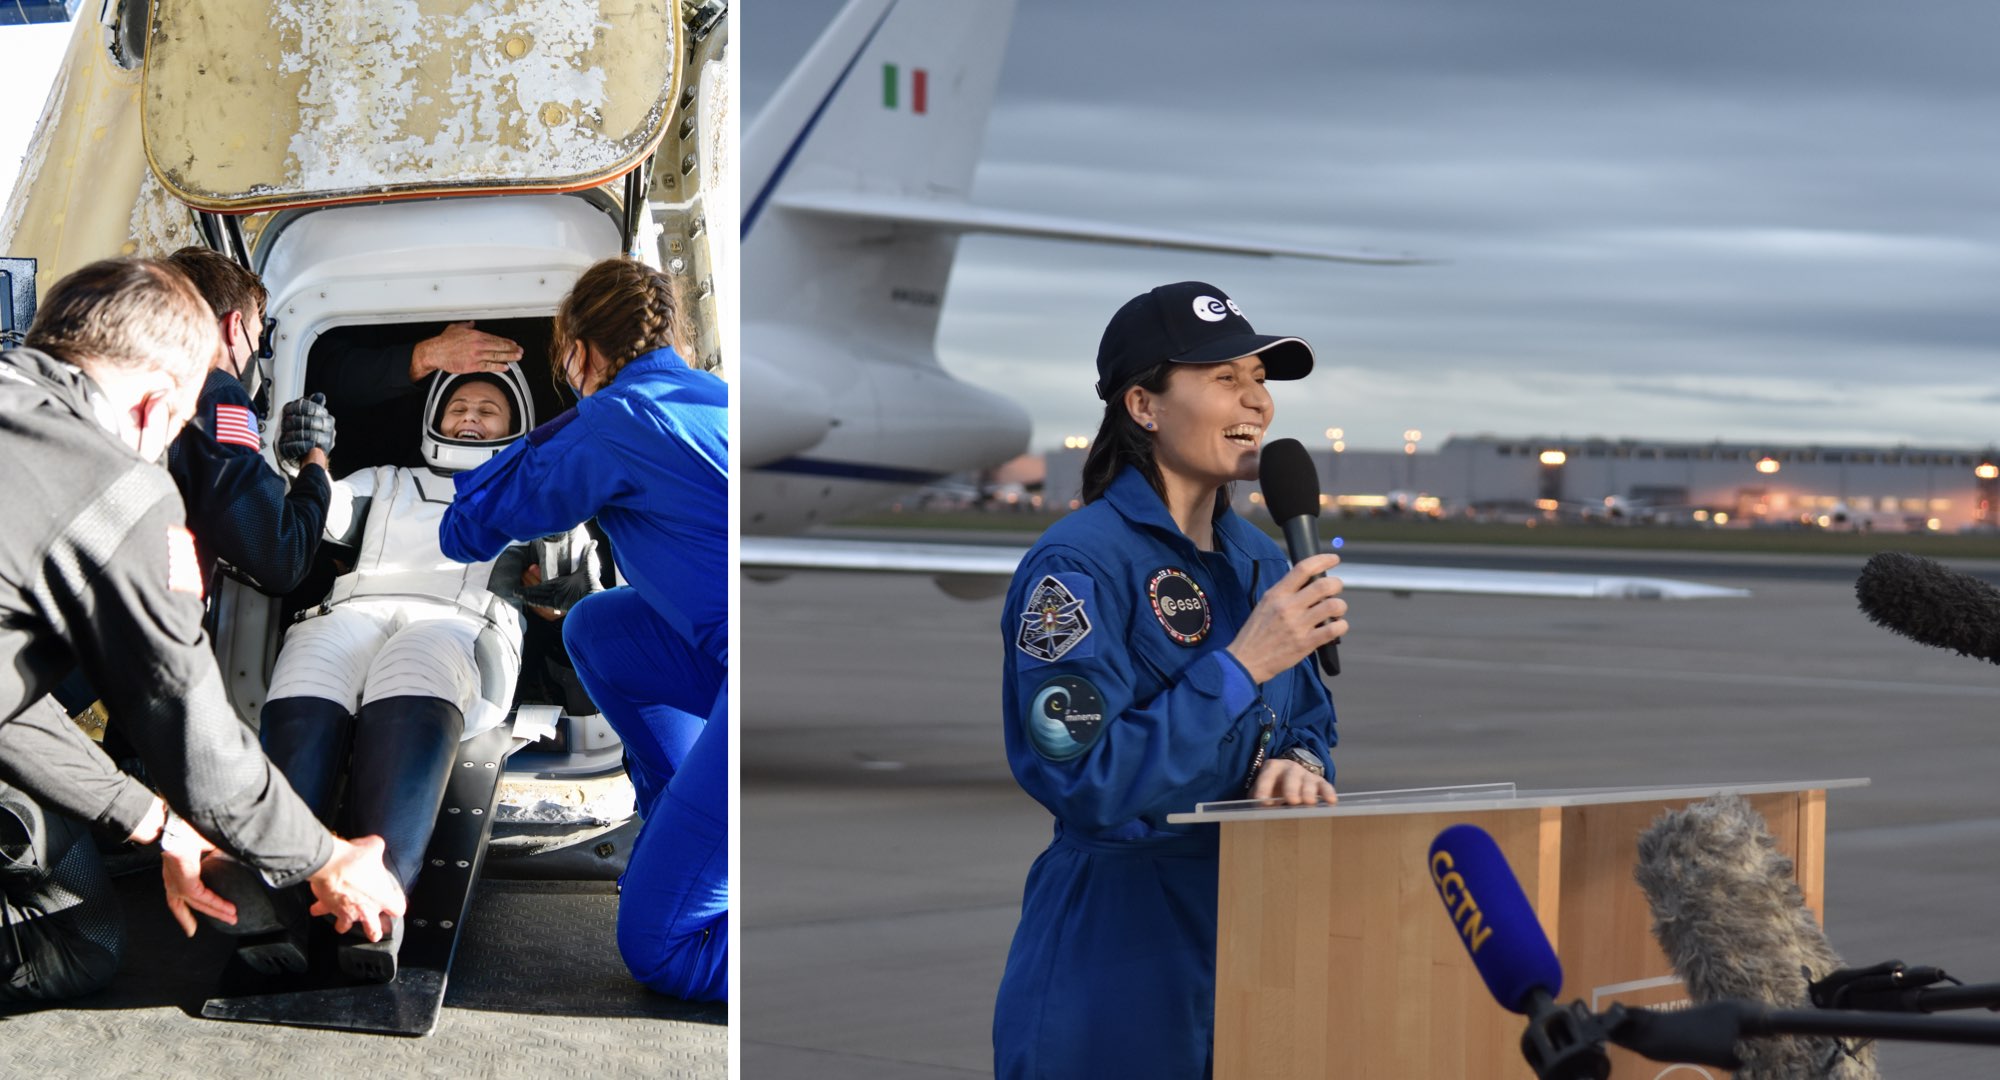 Gauche : Samantha Cristoforetti est sortie de la capsule Crew Dragon après l’amerrissage du 14 octobre. Droite : Arrivée le lendemain à Cologne en Allemagne afin que les équipes de l’European Astronaut Centre de l’ESA suivent sa réadaptation à la Terre. Crédit : Cité de l’espace/S. Corvaja/N. Ivanova